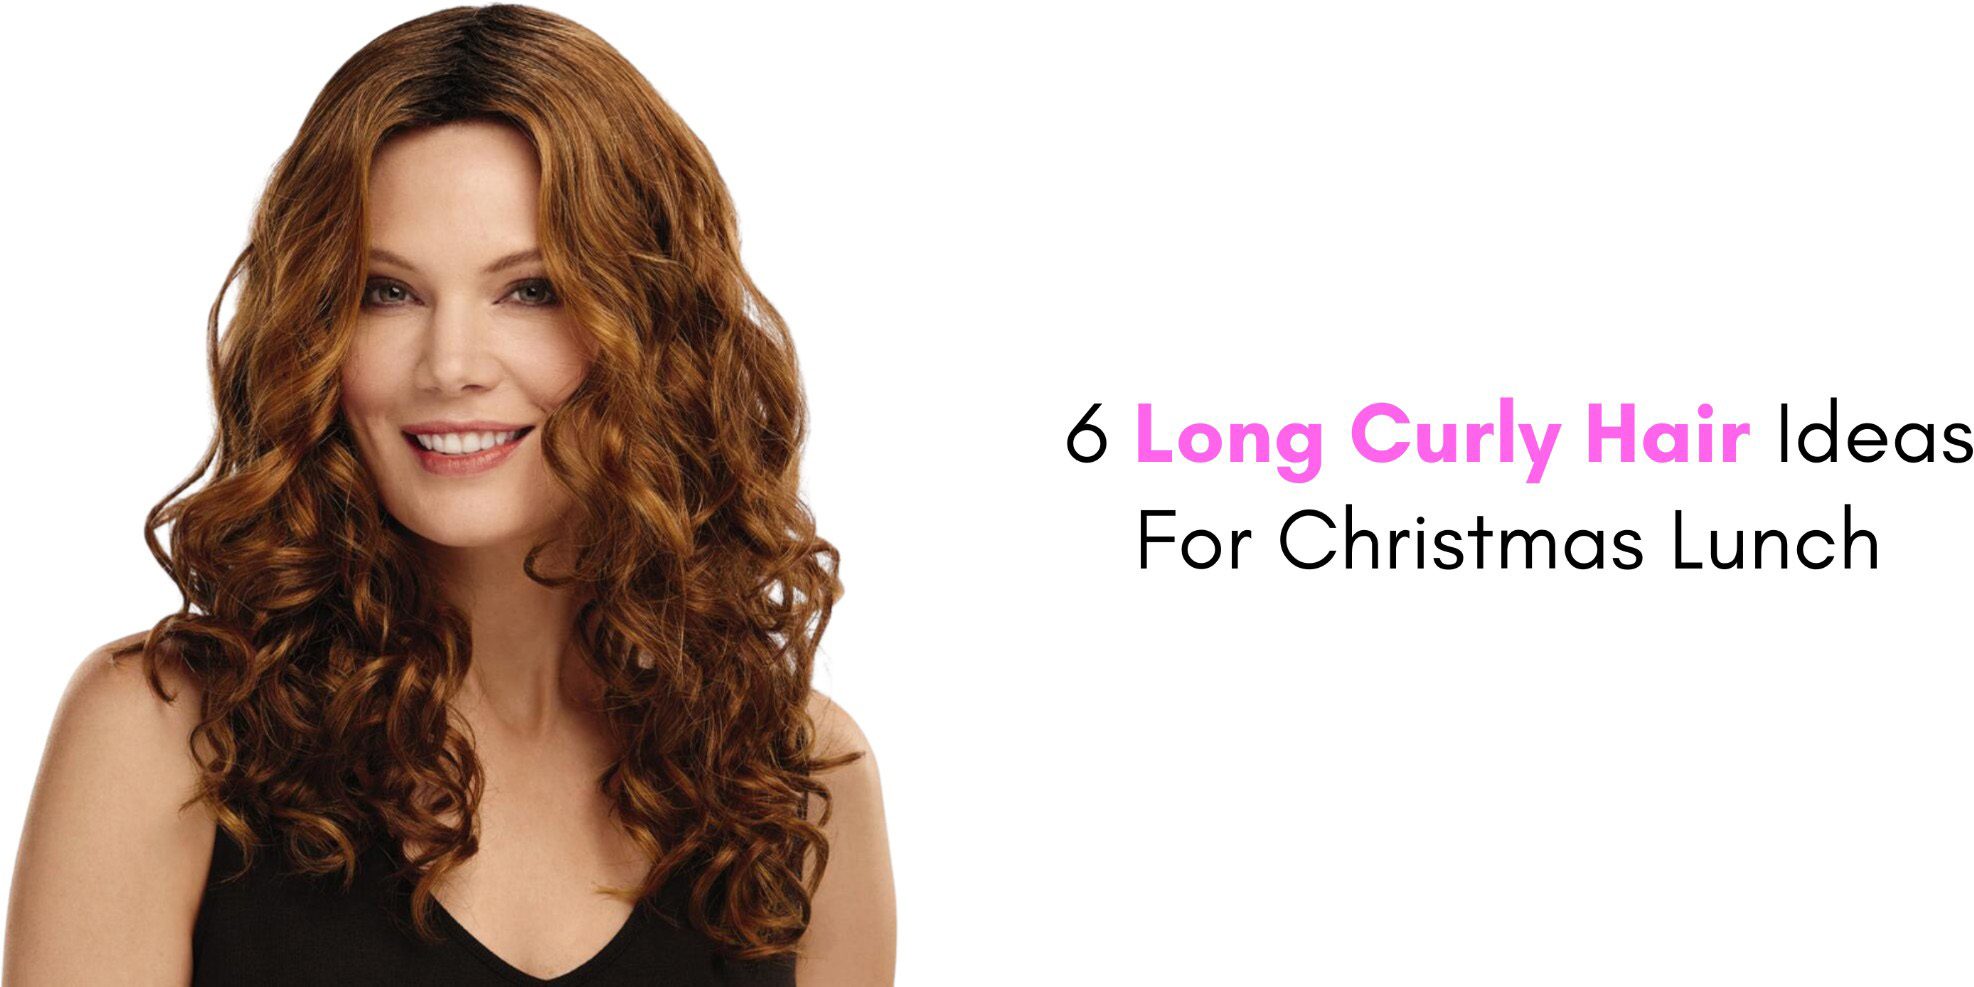 6 Long Curly Hair Ideas For Christmas